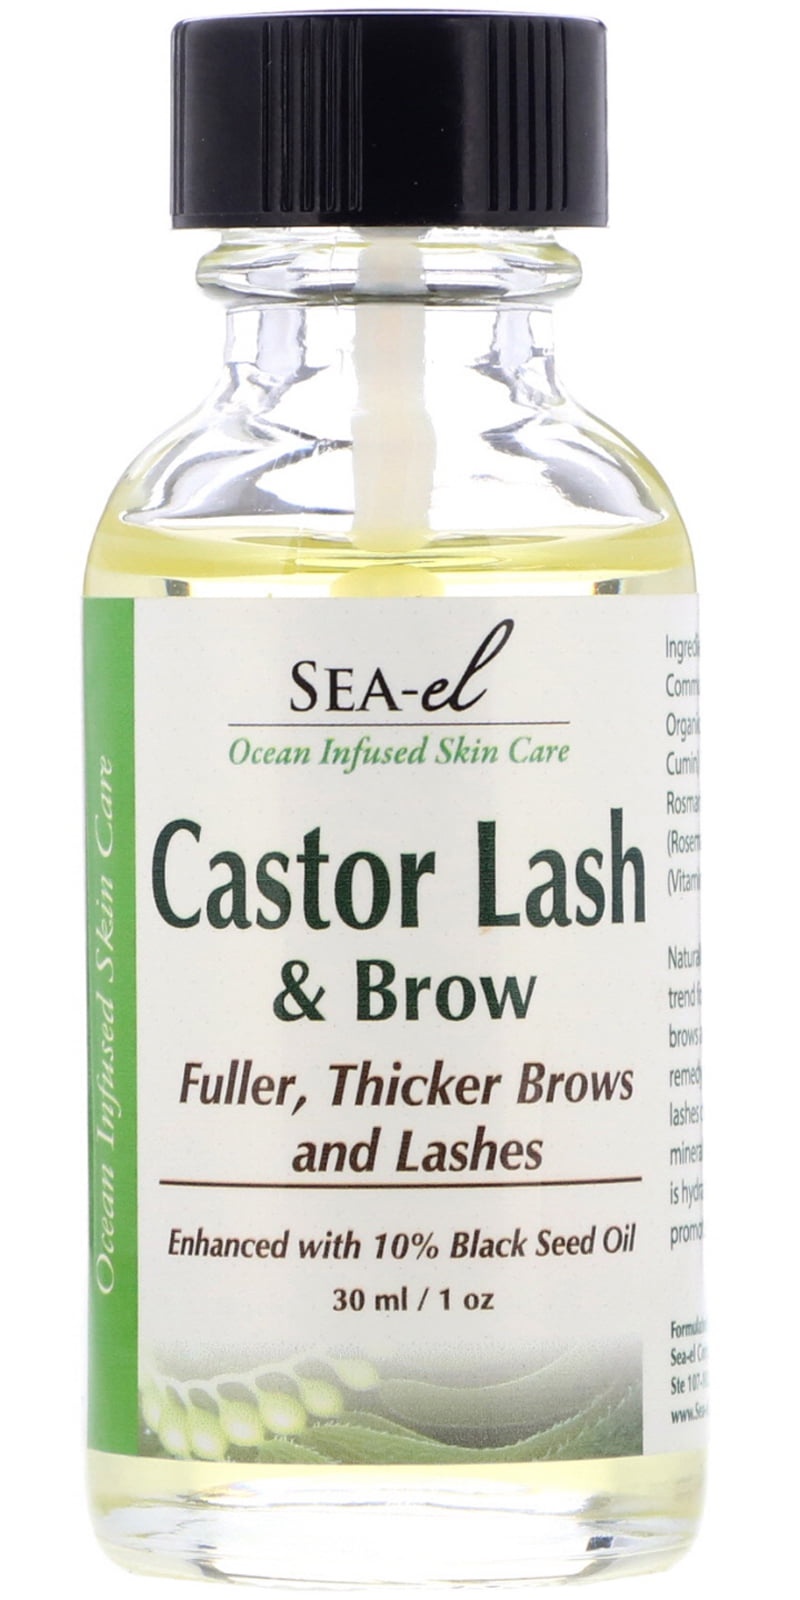 Sea-el Castor Lash & Brow Serum